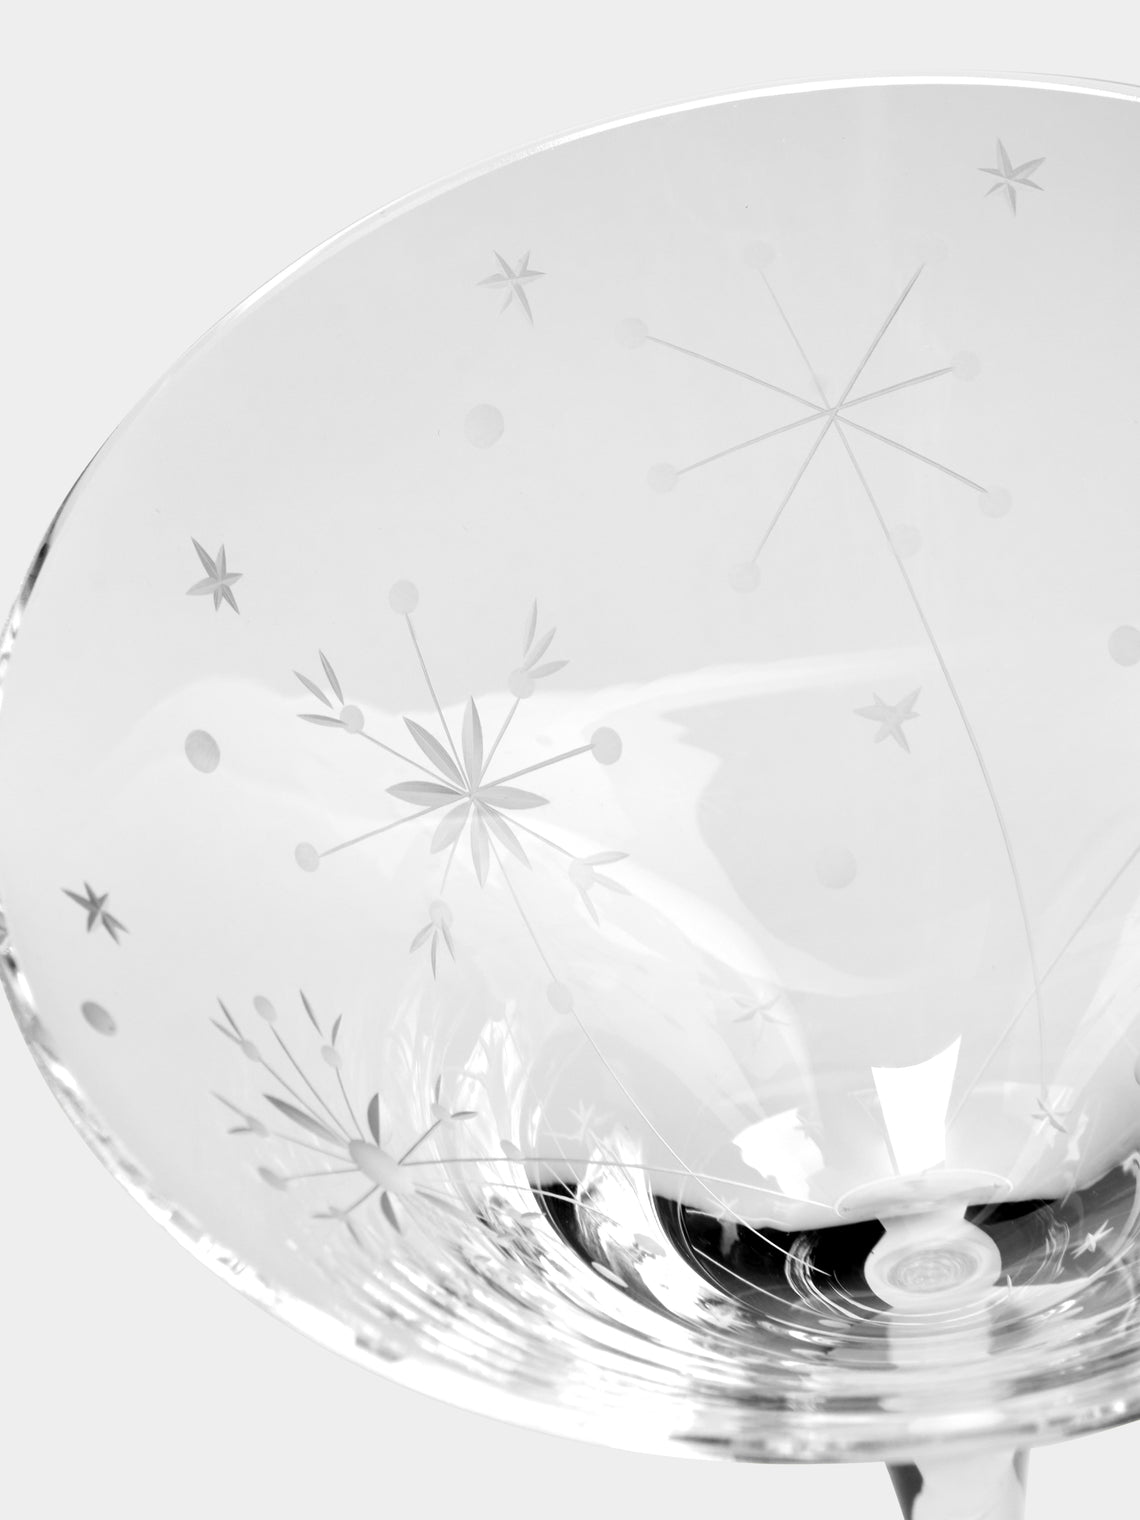 Artel - Fireworks Hand-Engraved Crystal Cocktail Glass -  - ABASK